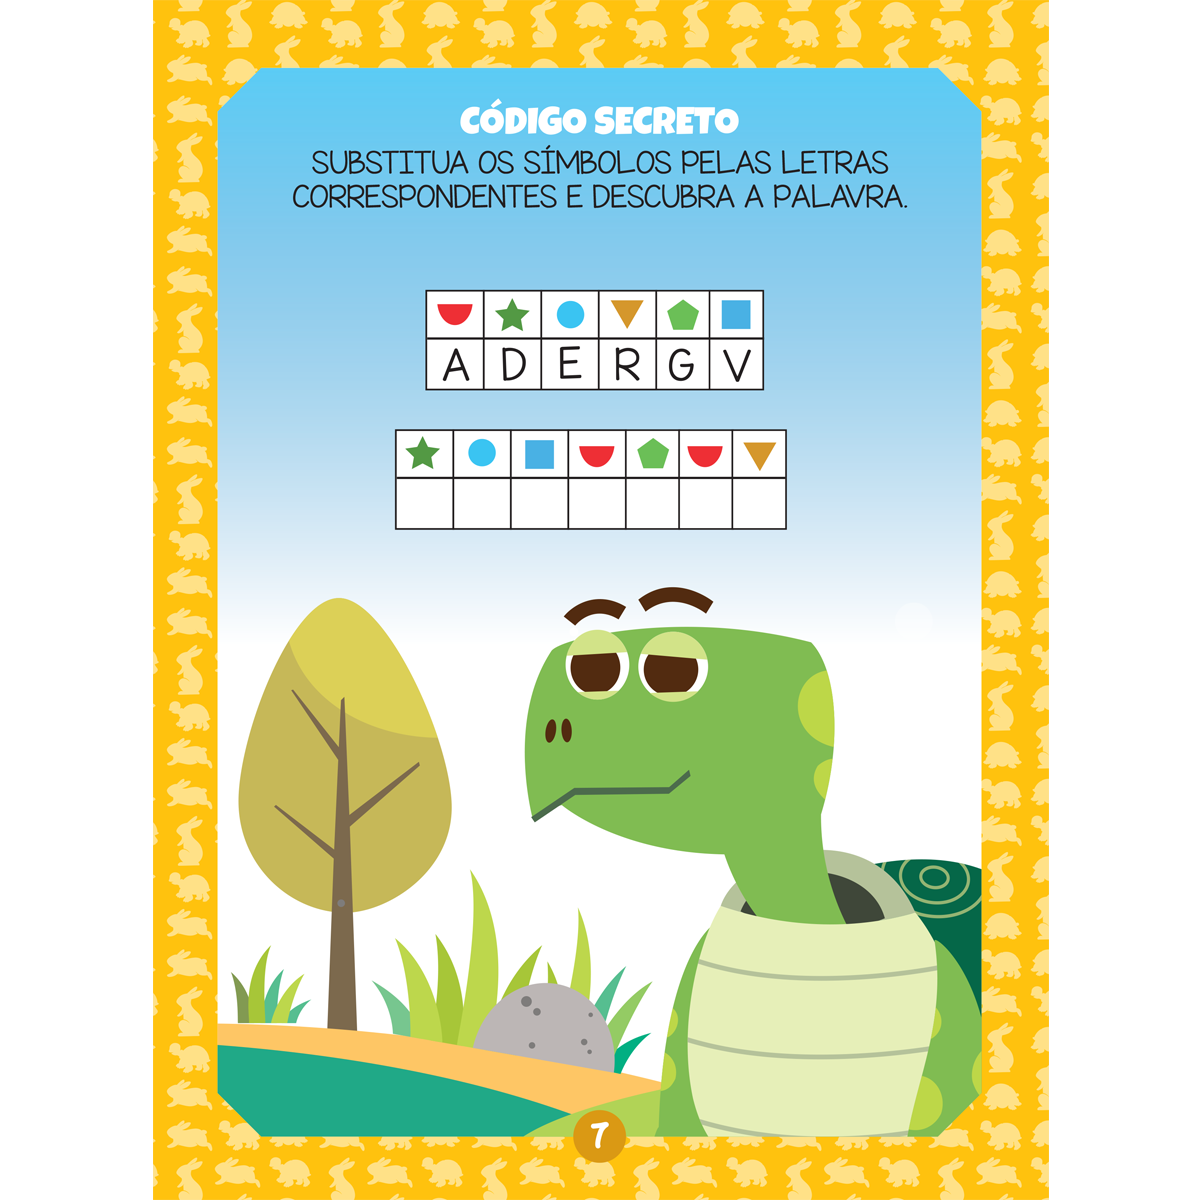 Brincar - Aprender - Colorir II: Pista de Corrida - Tese Pedagógicos